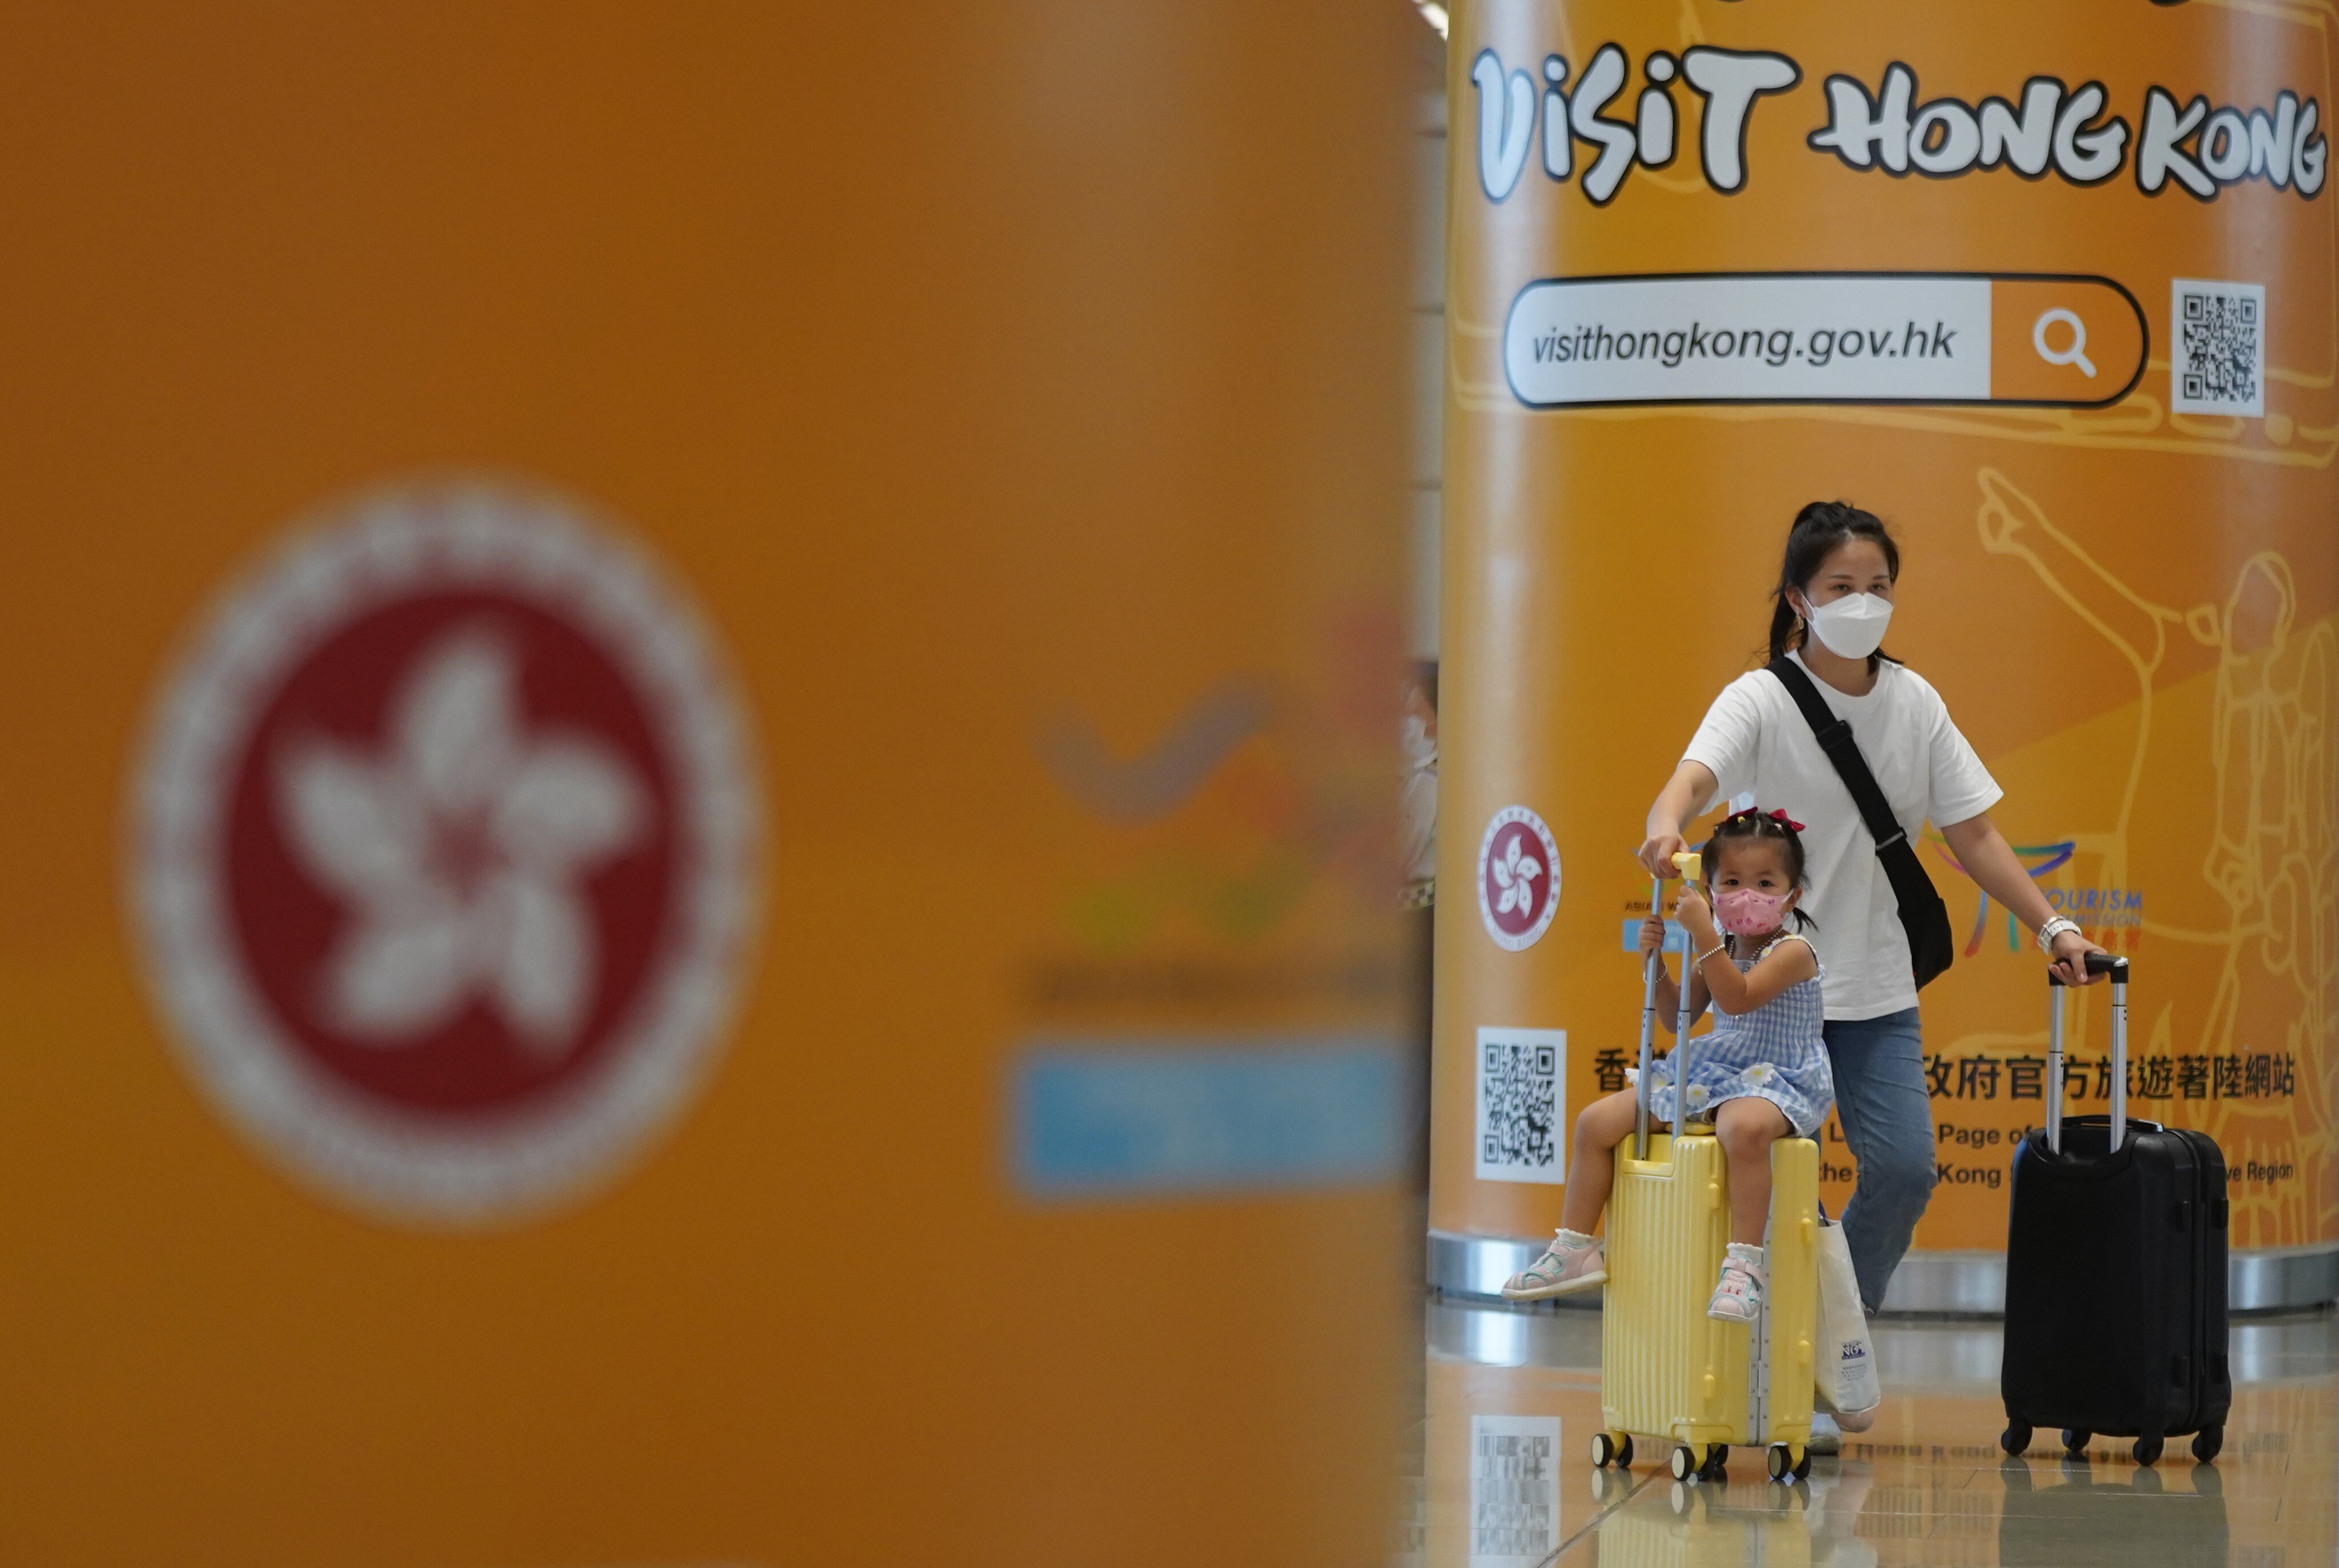 A woman and child walk past a Visit Hong Kong tourism poster at the port at the Hong Kong-Zhuhai-Macao Bridge on September 15. Photo: Sam Tsang